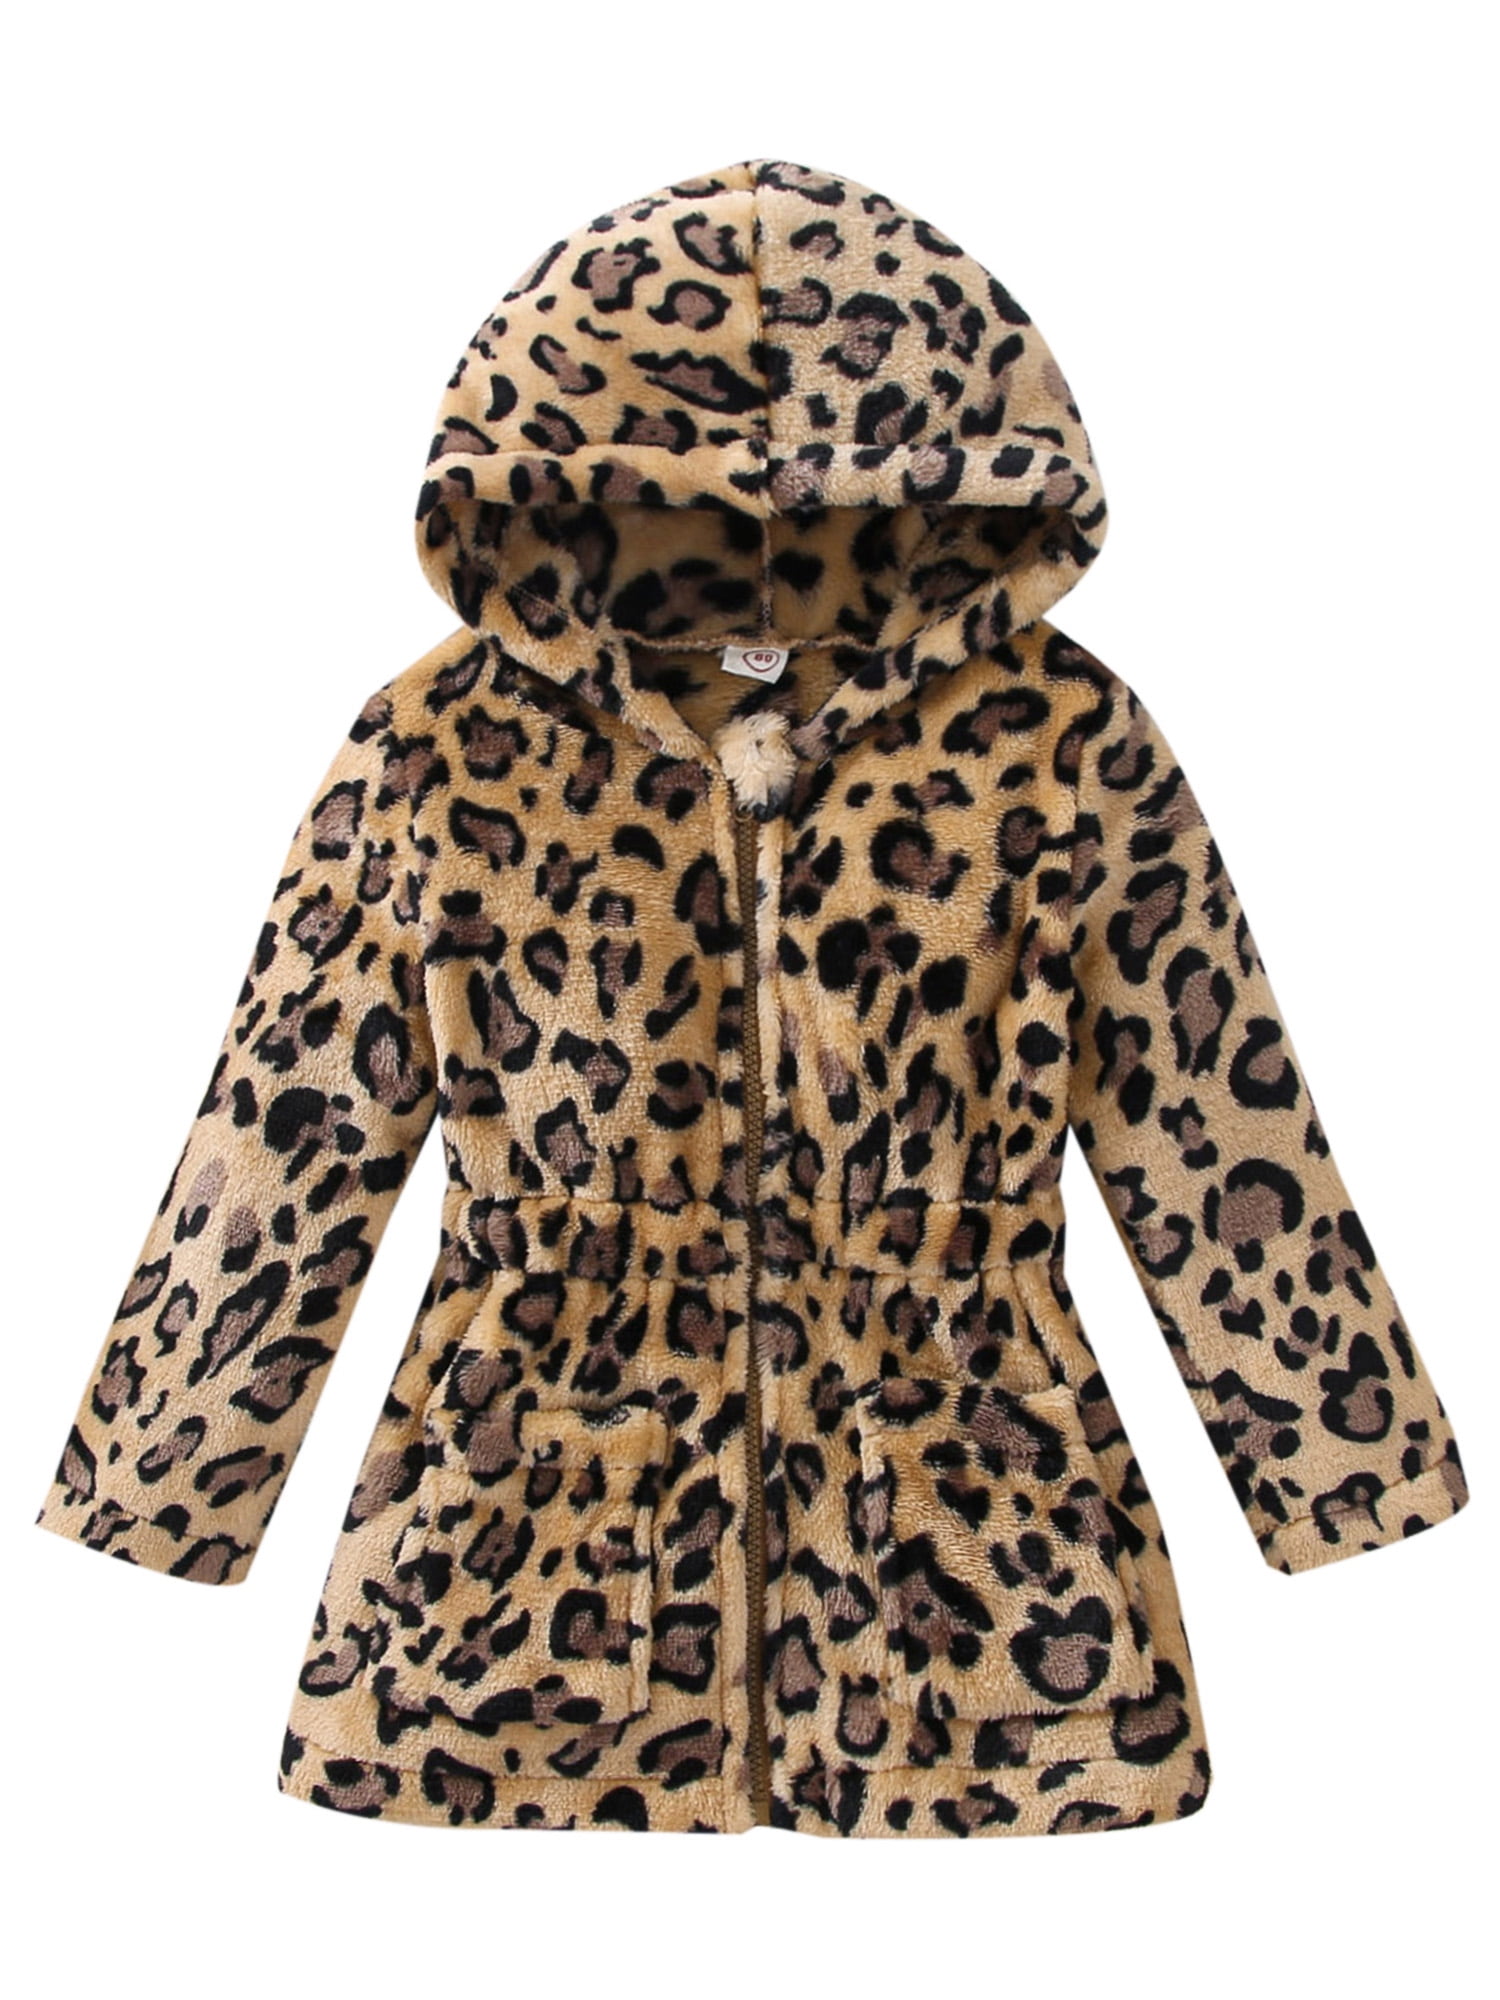 Bagilaanoe Toddler Baby Girls Hoodie Jacket Long Sleeve Leopard Elastic ...